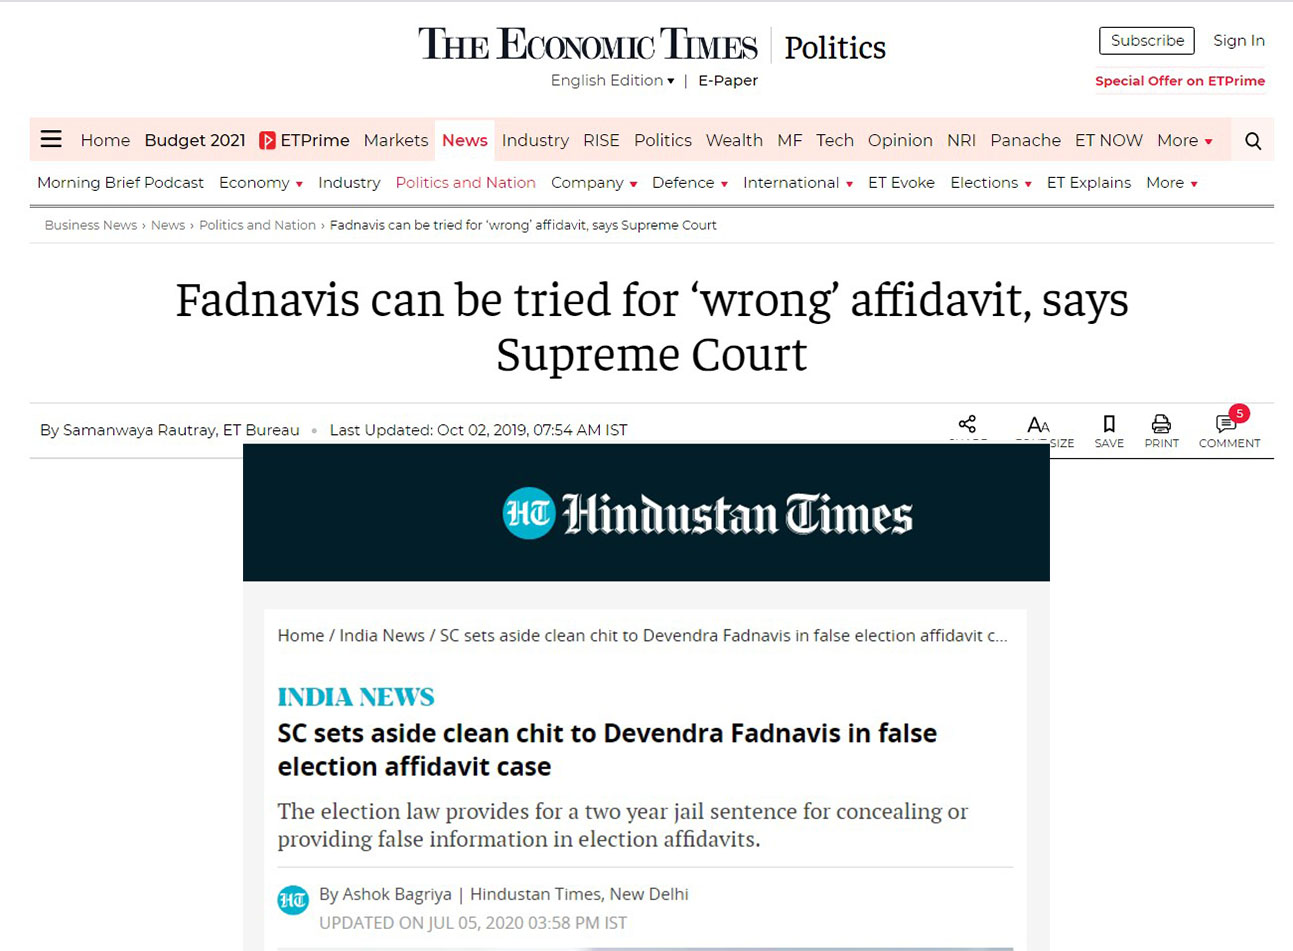 Devendra Fadnavis trial in false election affidavit , 2019